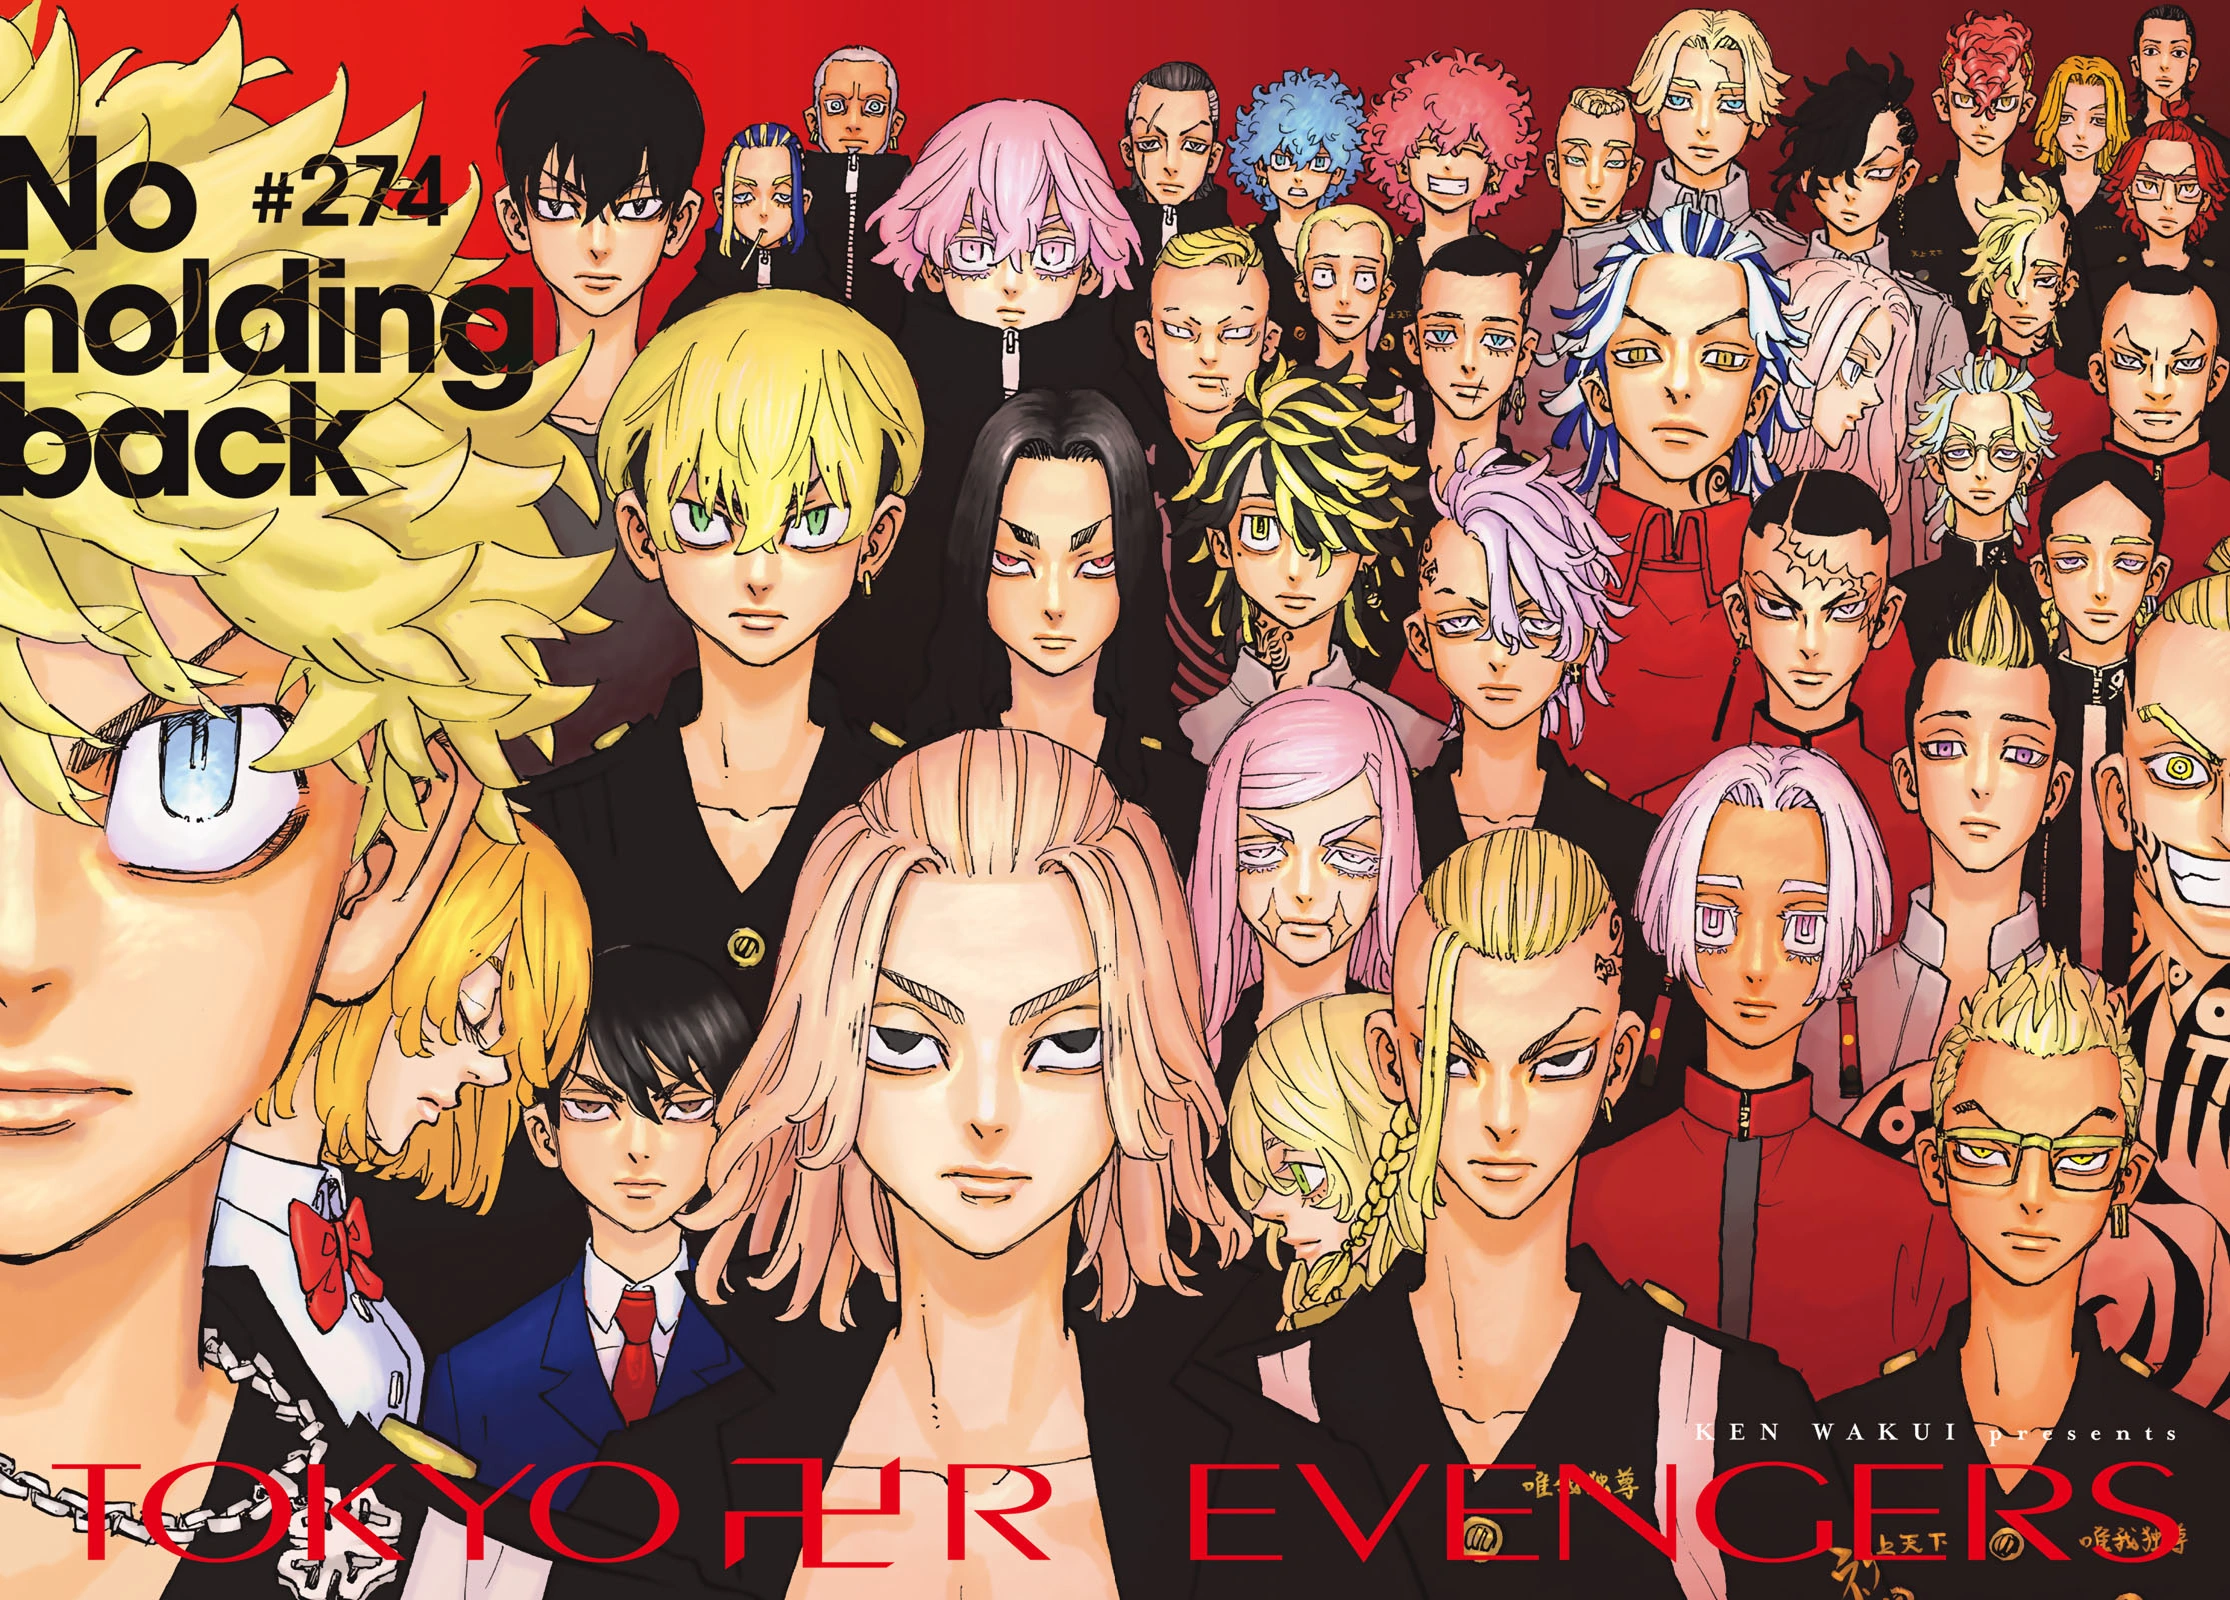 Tokyo Revengers – Arco final do mangá é anunciado - Manga Livre RS